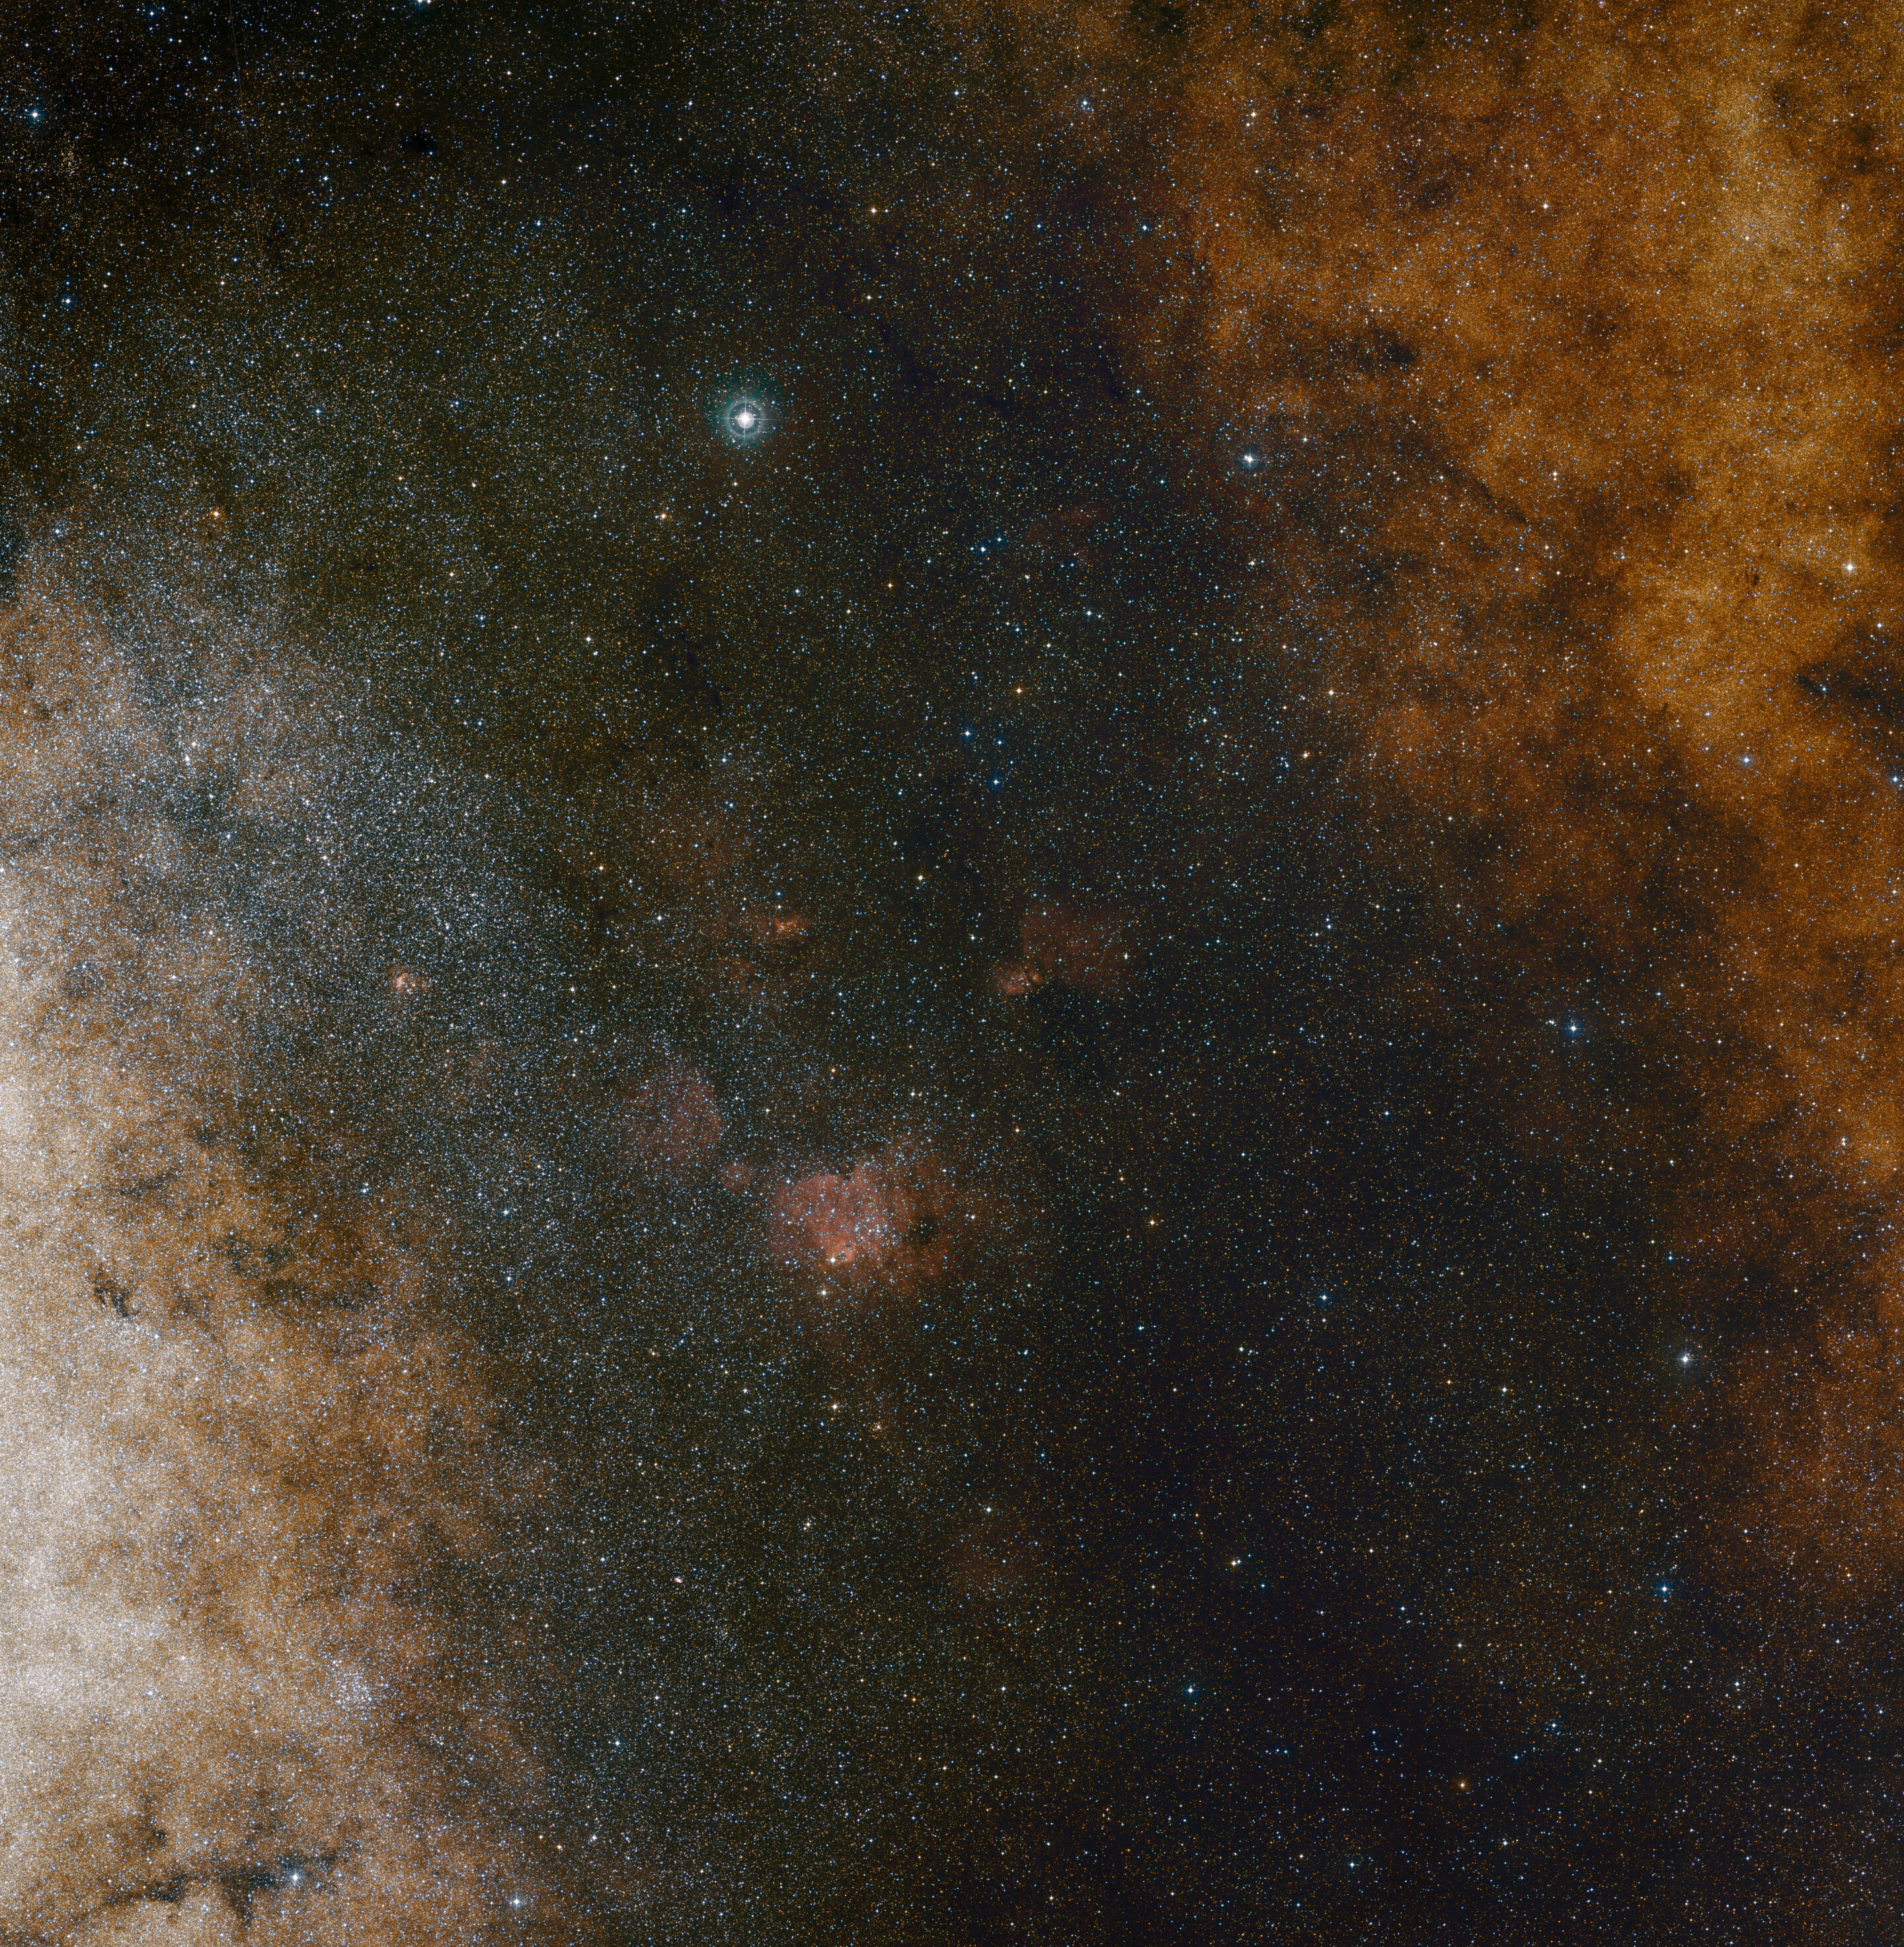 Essa visão de campo amplo de luz visível mostra as ricas nuvens de estrelas na constelação de Sagitário (o Arqueiro) na direção do centro da nossa galáxia Via Láctea. A imagem inteira está repleta de um grande número de estrelas, mas muitas outras permanecem ocultas atrás de nuvens de poeira e só são reveladas em imagens infravermelhas. Essa visualização foi criada a partir de fotografias em luz vermelha e azul e faz parte do Digitized Sky Survey 2. O campo de visão é de aproximadamente 3,5 graus x 3,6 graus. Crédito: ESO e Digitized Sky Survey 2. Agradecimentos: Davide De Martin e S. Guisard